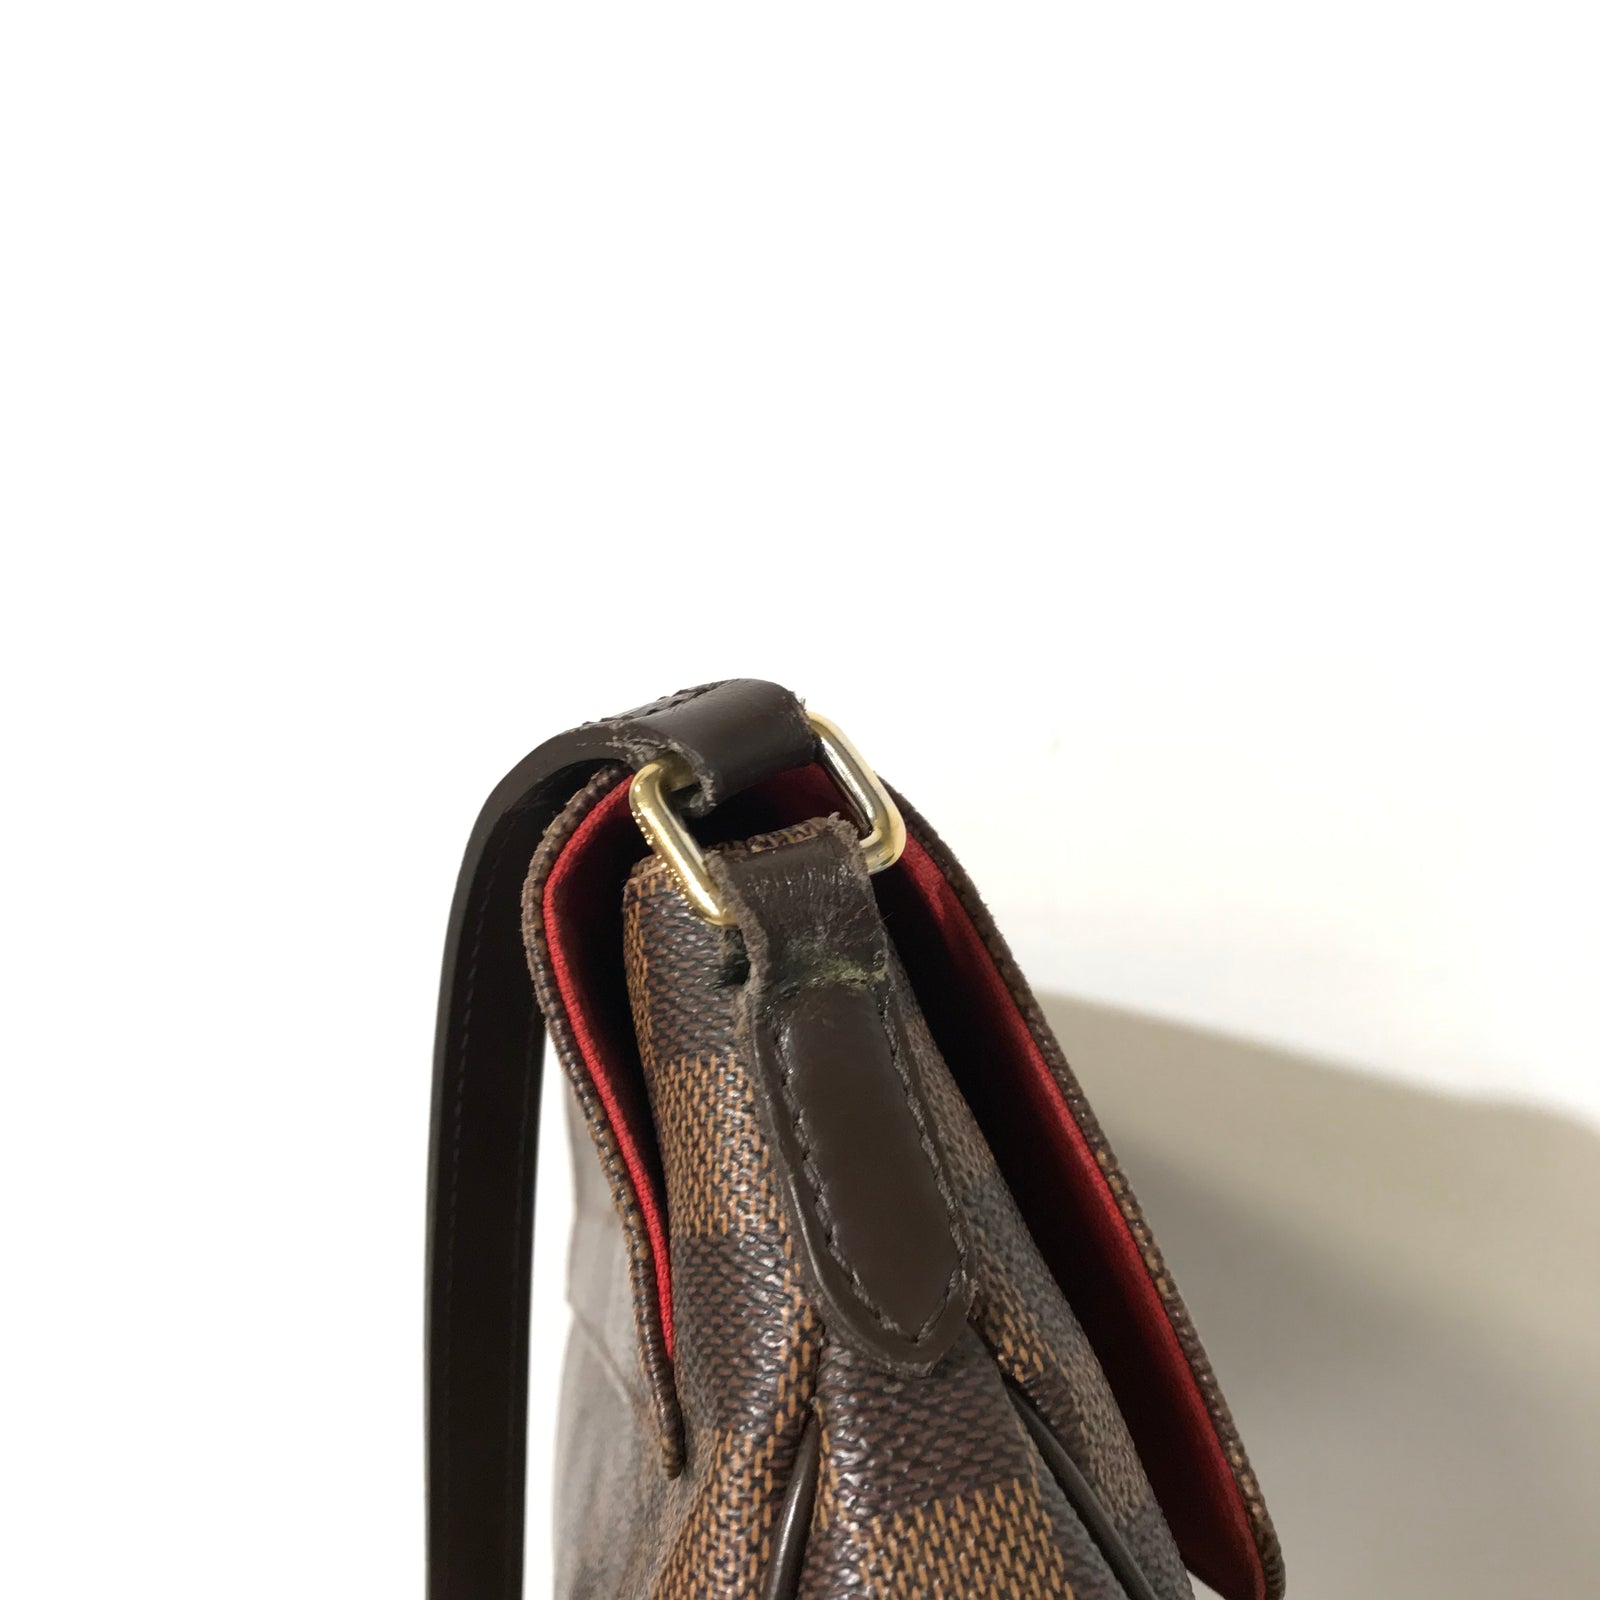 Louis Vuitton Besace Rosebery Bag - Brown Shoulder Bags, Handbags